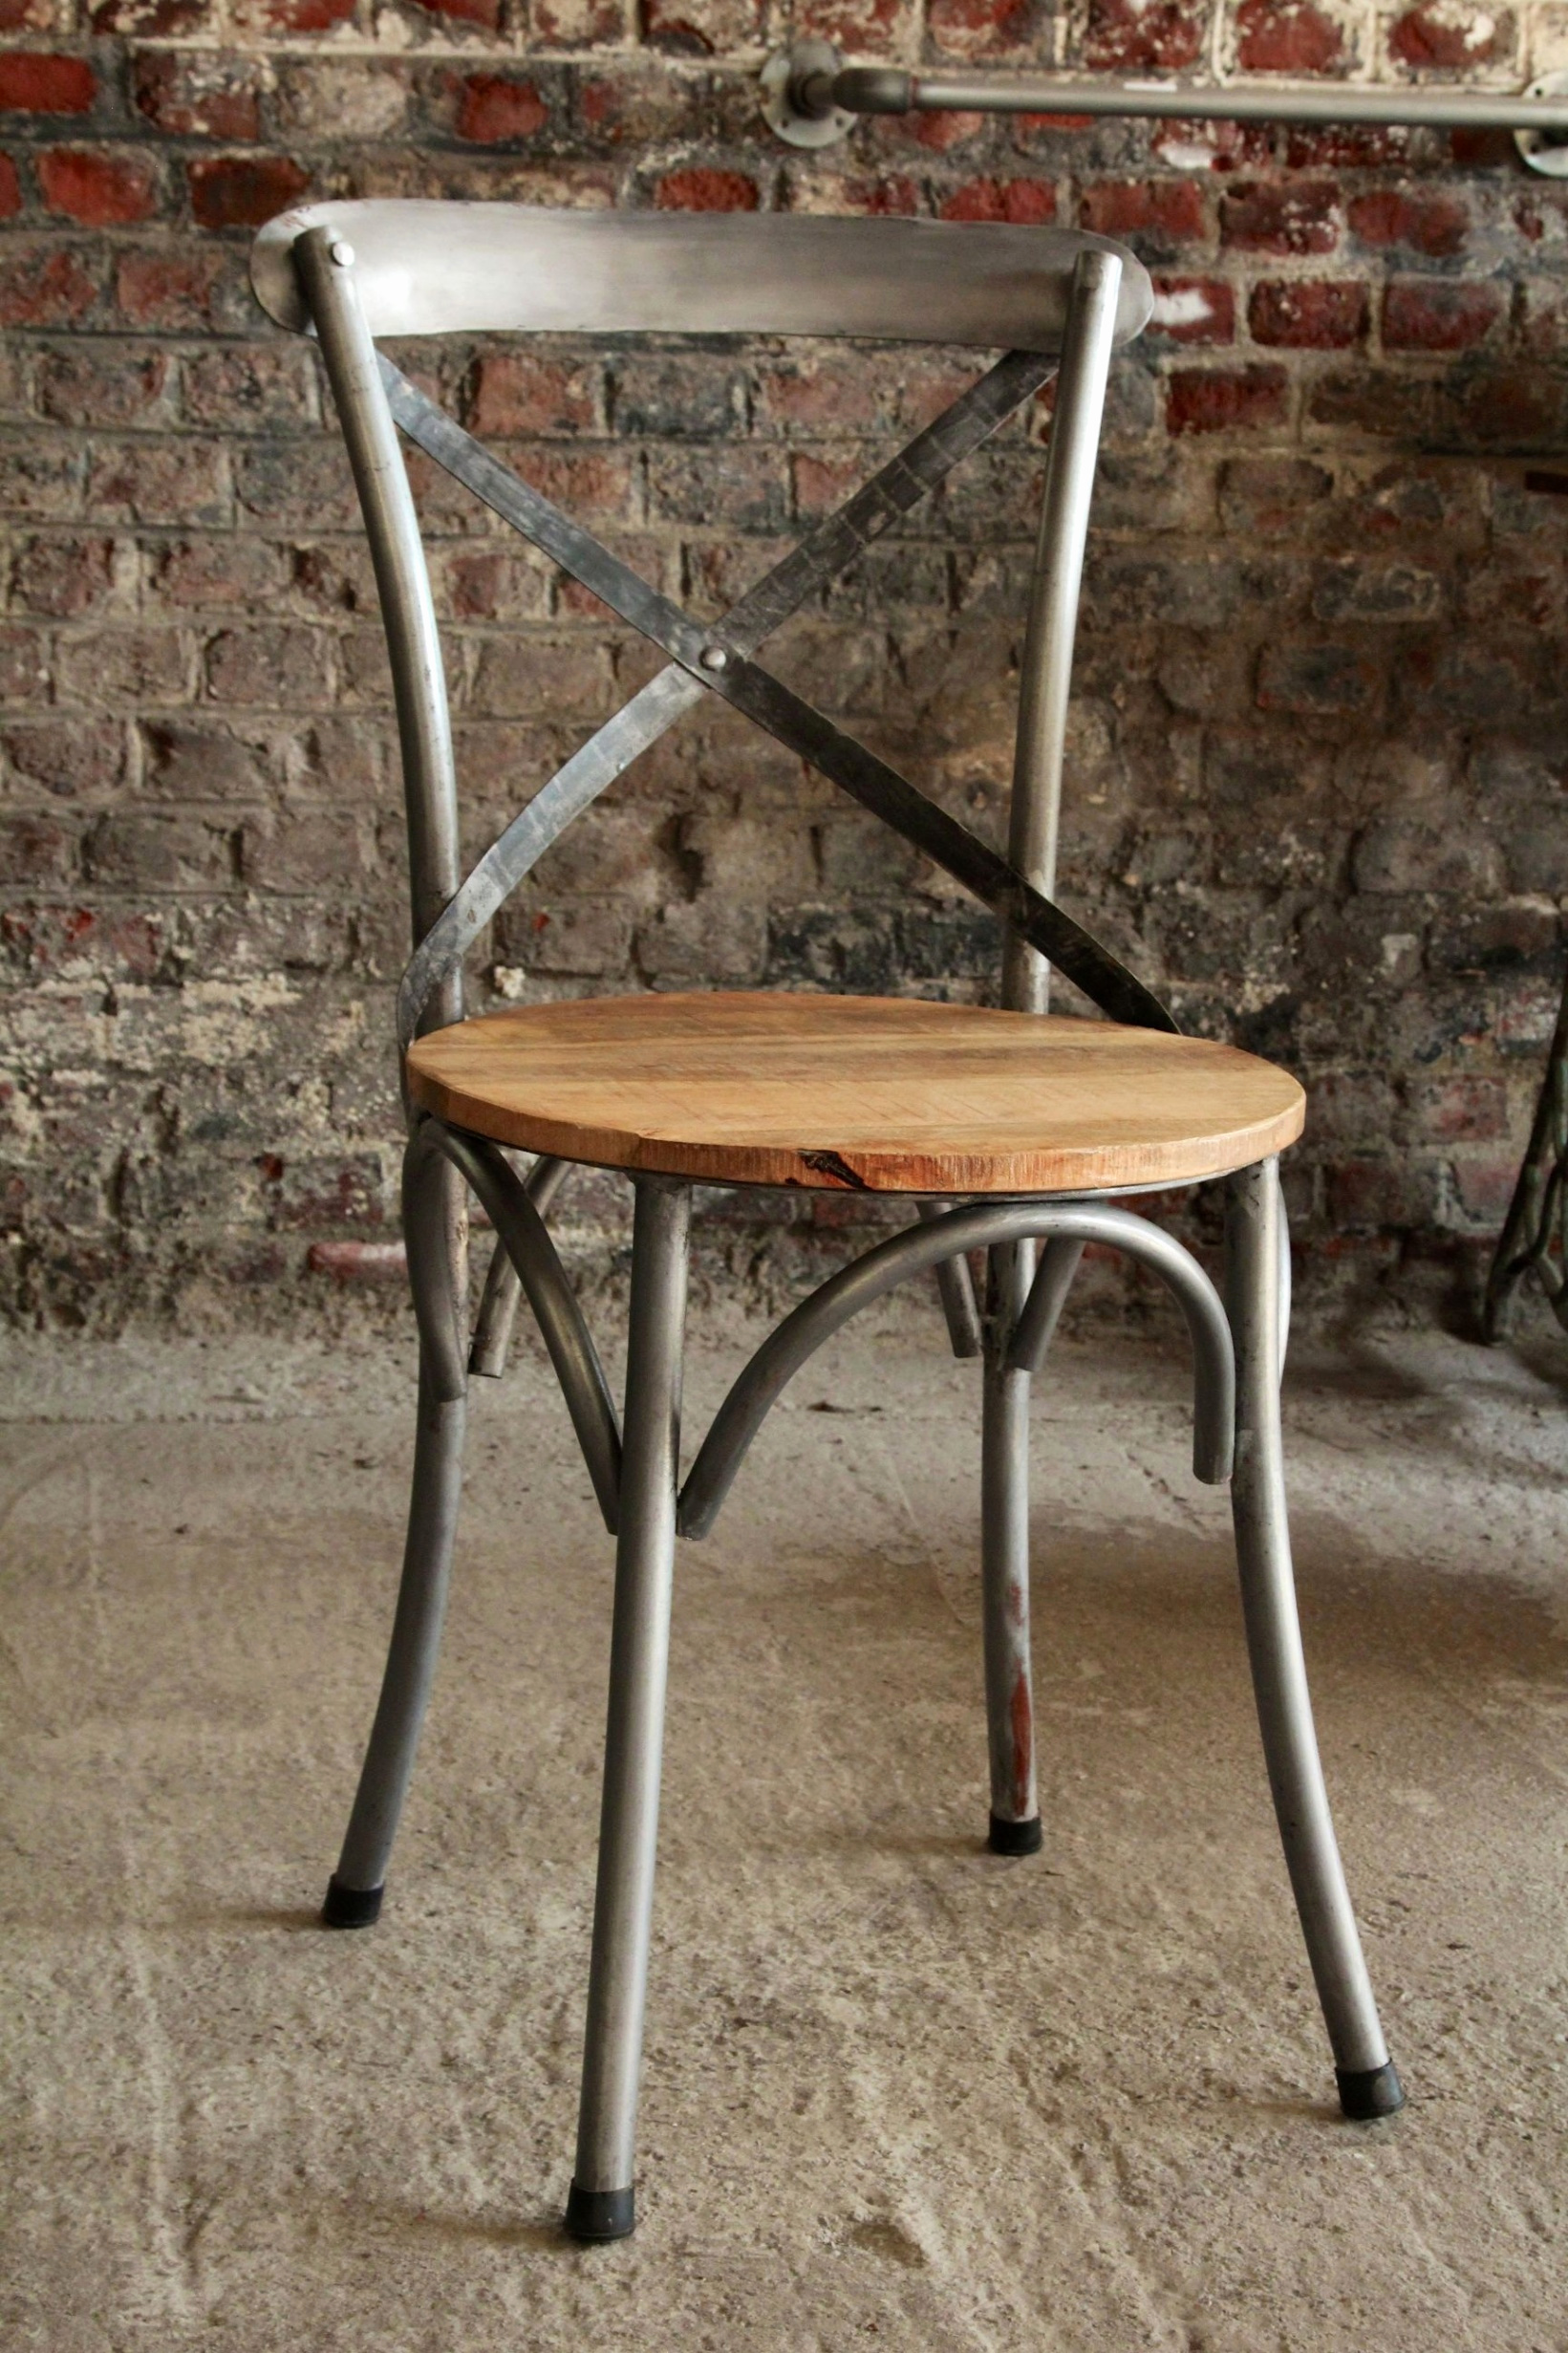 mode industriel pas cher elegant chaise style industriel pas cher genial chaise bistrot bois et metal of mode industriel pas cher